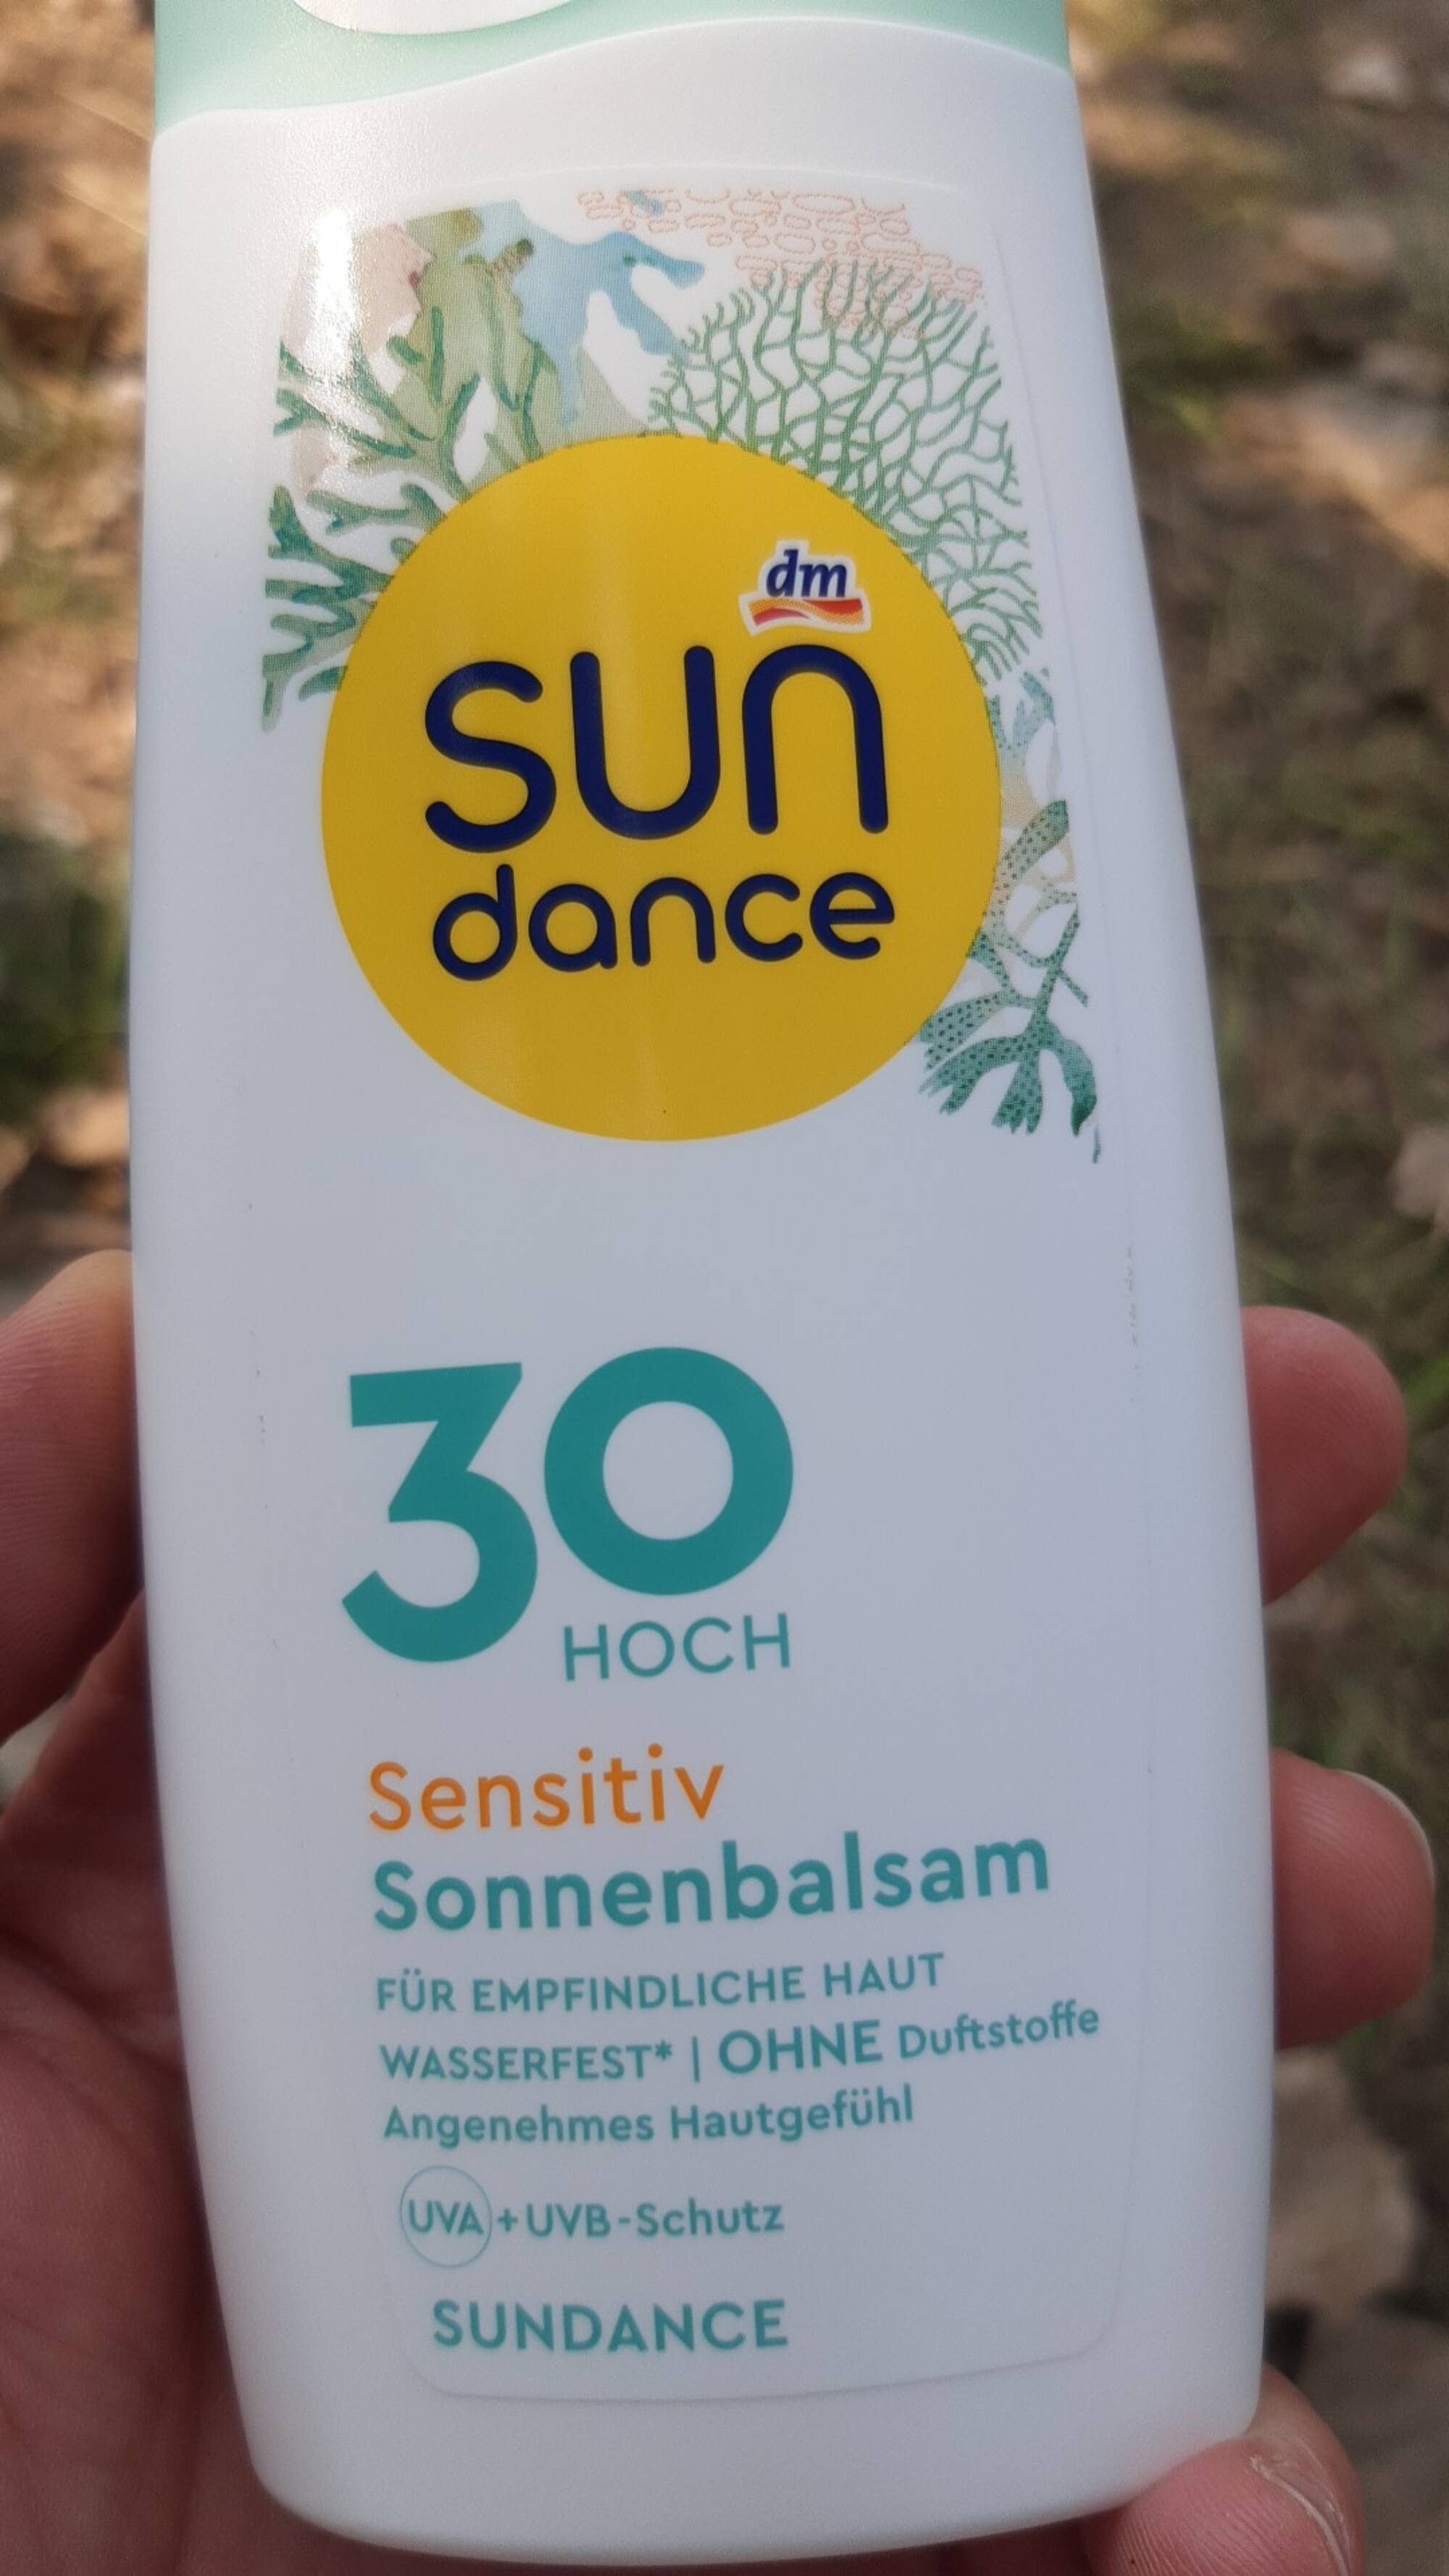 DM - Sun dance Sensitiv Sonnenbalsam 30 Hoch